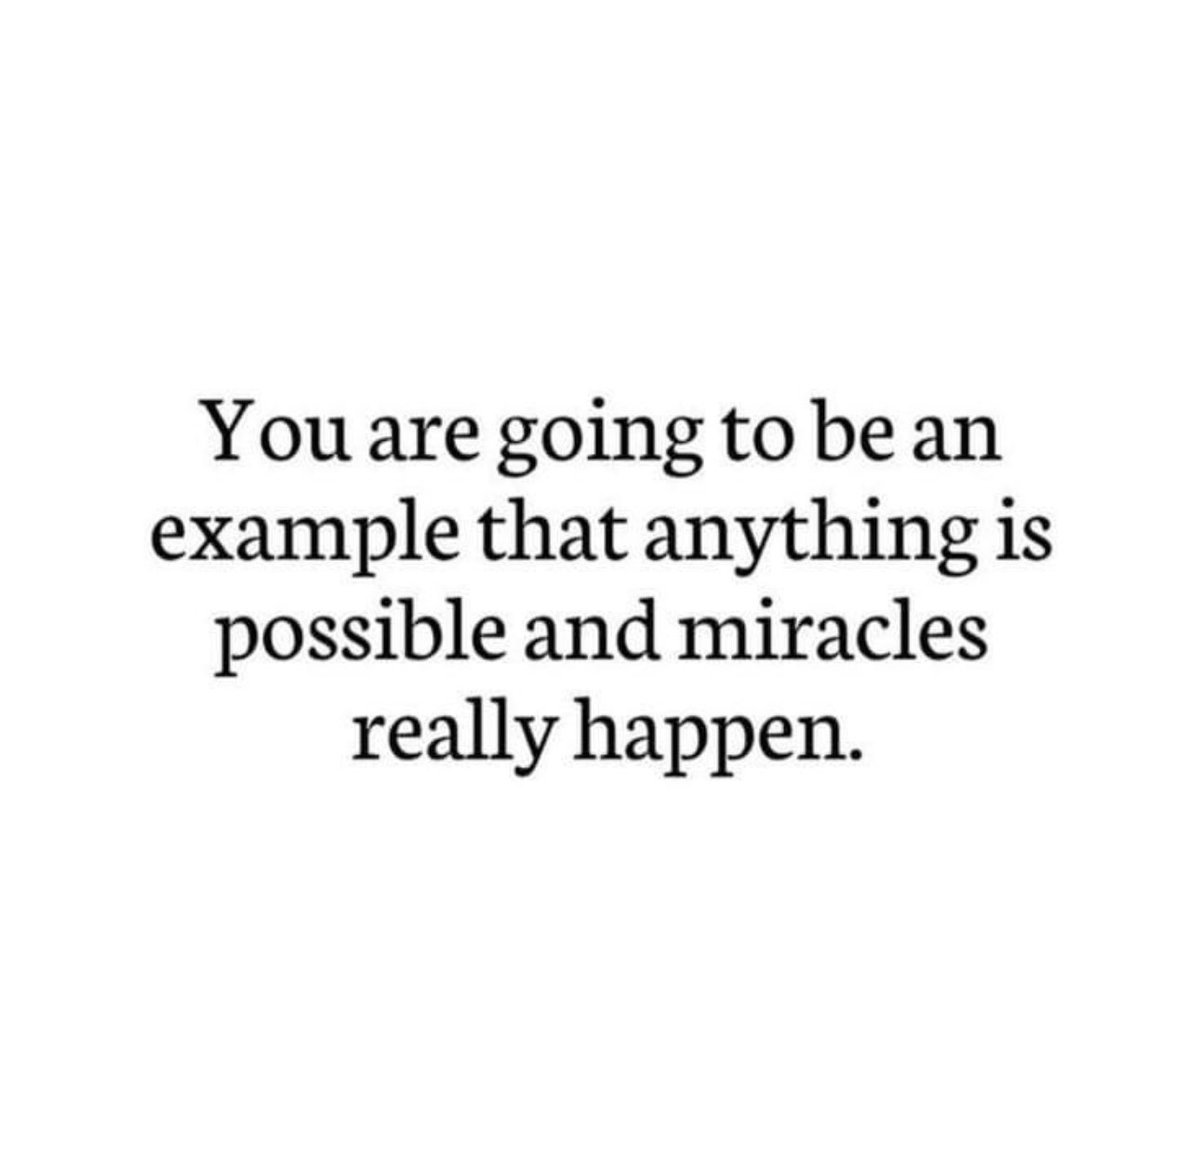 #ThinkBIGSundayWithMarsha #MiraclesHappen #MotivationMonday